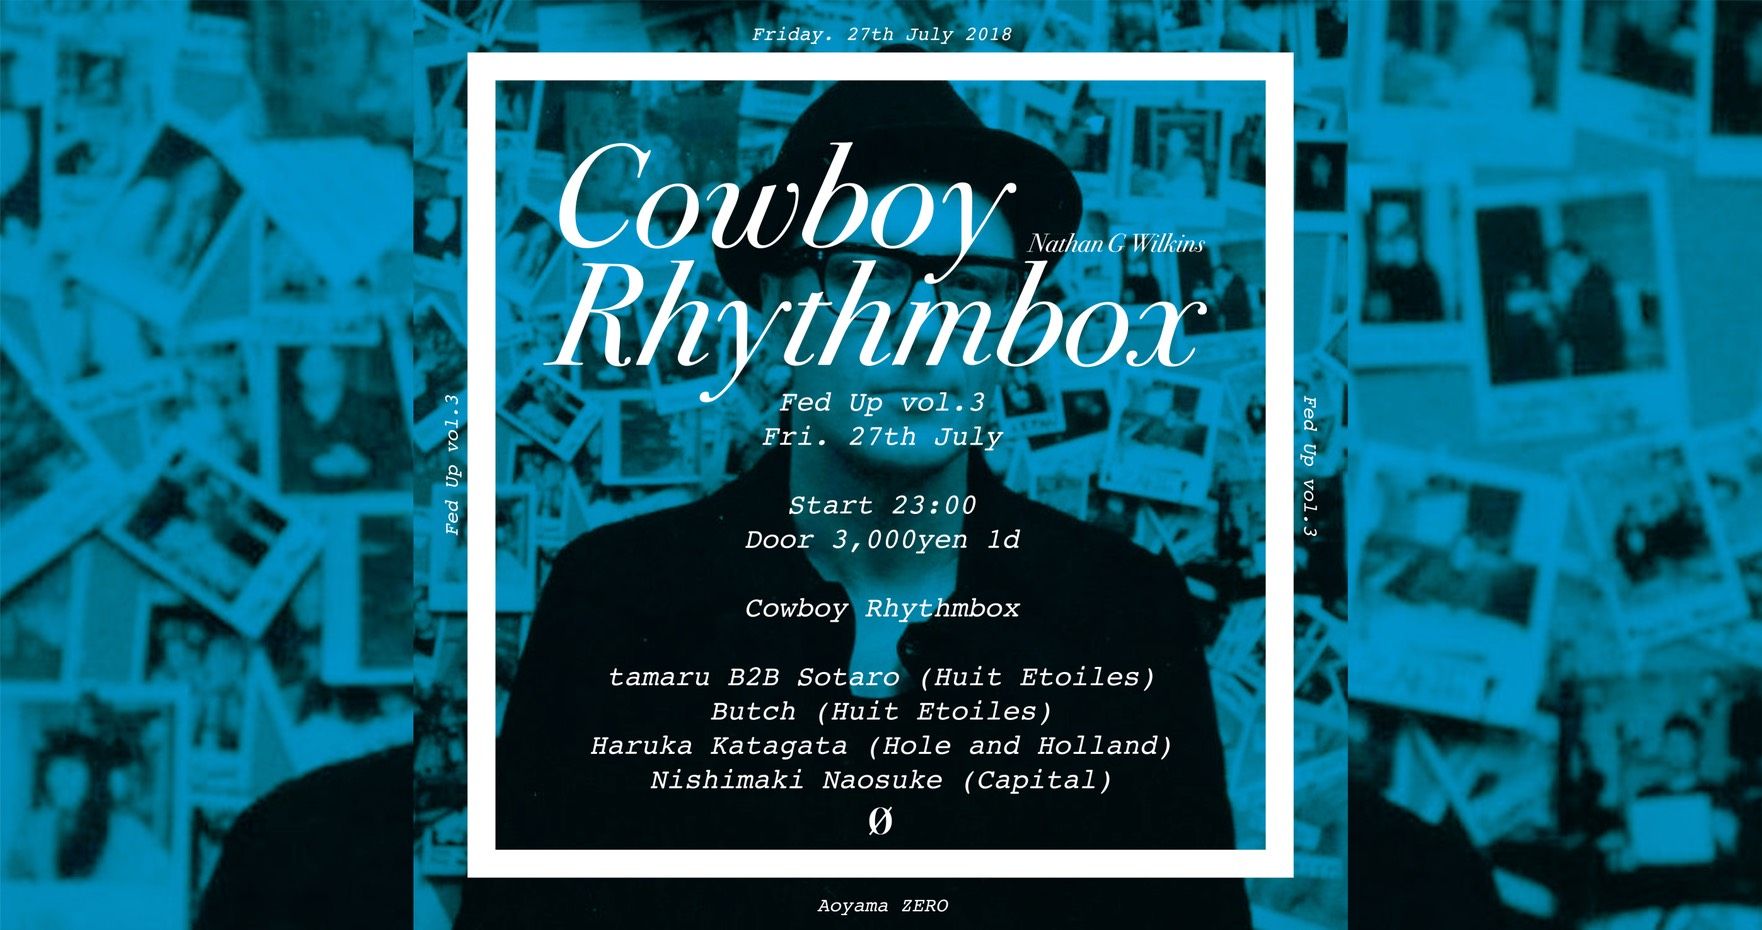 Fed Up vol.3 Cowboy Rhythmbox (Nathan Gregory Wilkins)